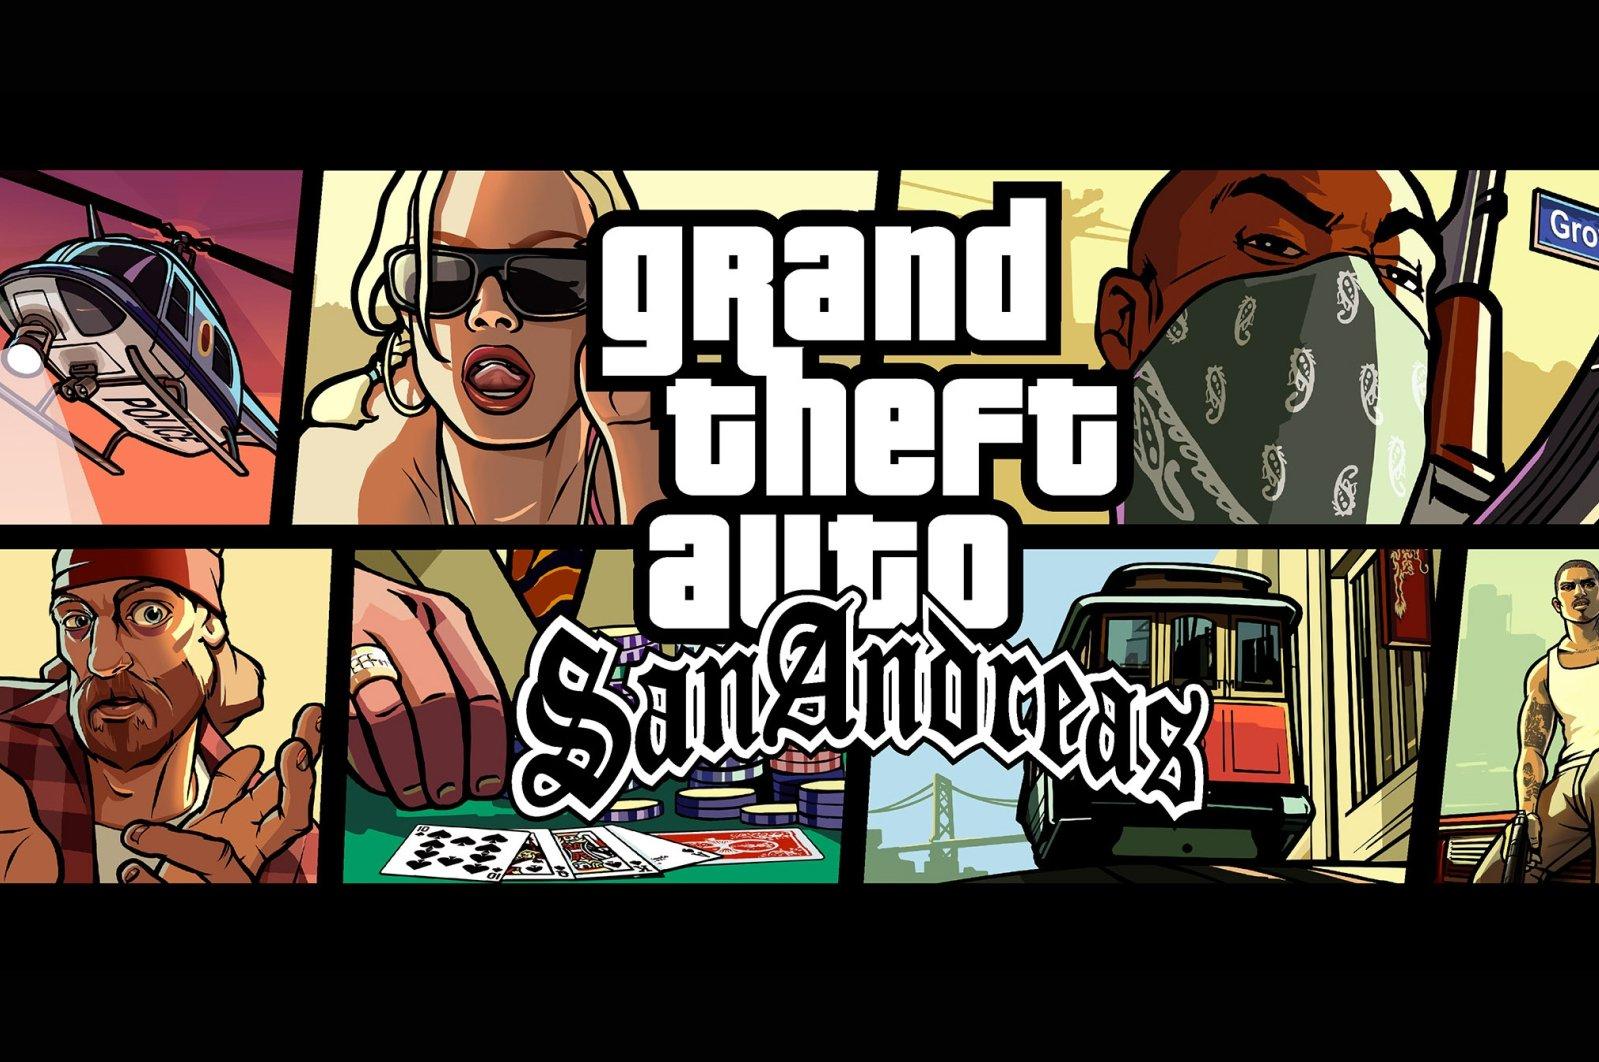 Gta San Andreas iOS/APK Version Full Game Free Download